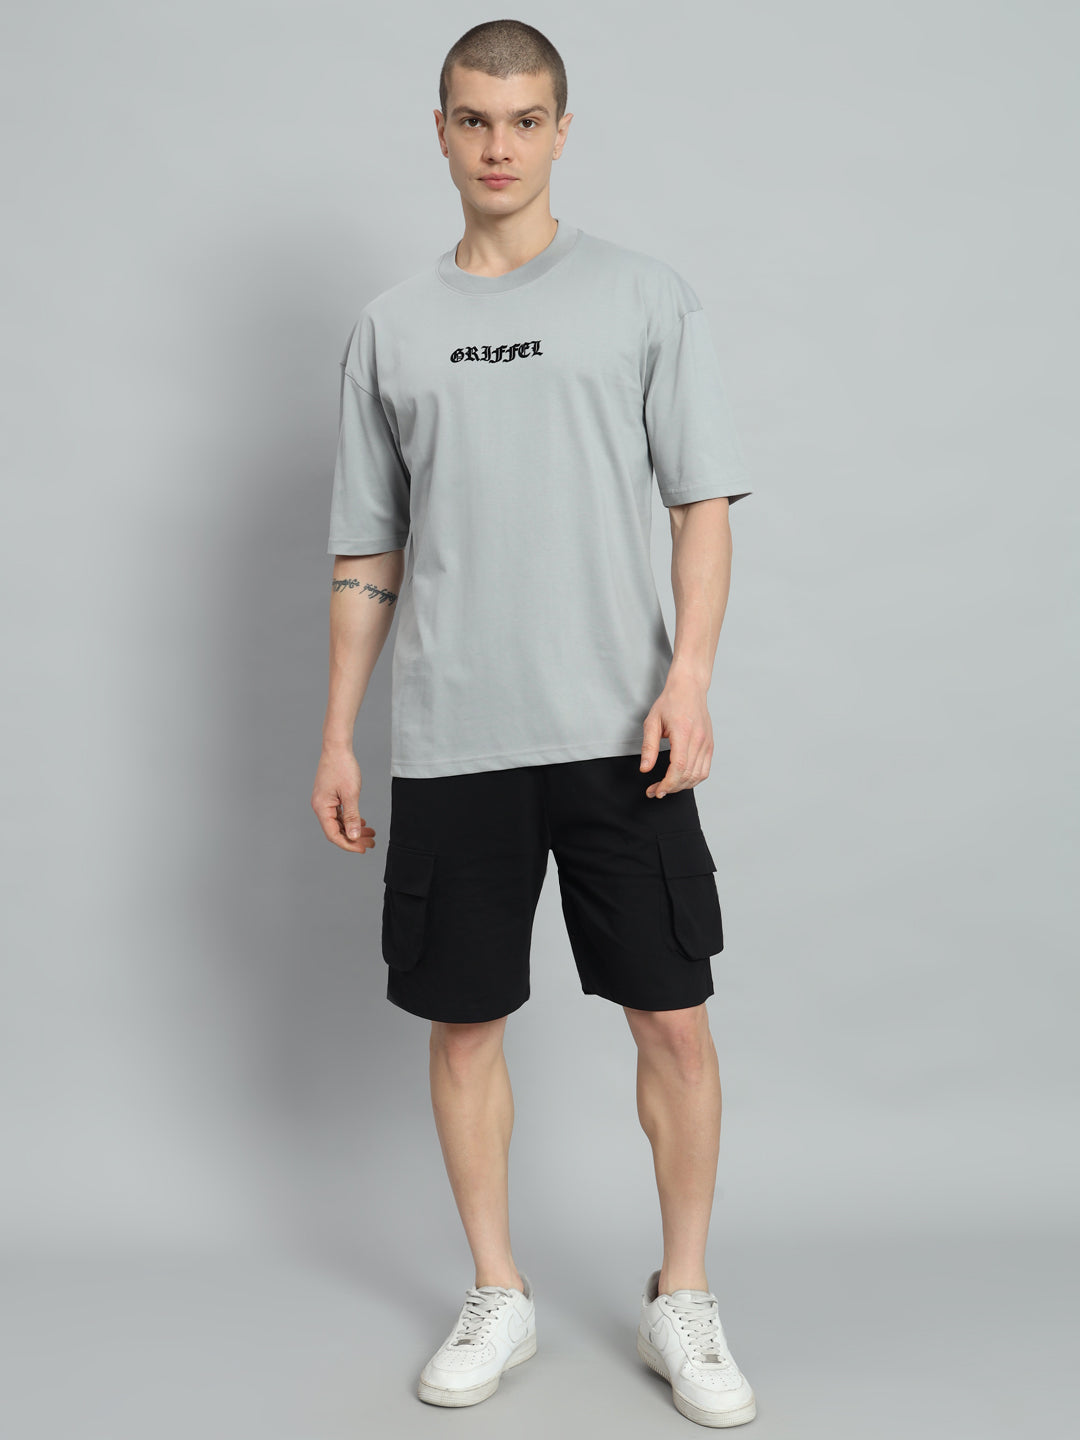 MAKE A MOVE T-shirt and Shorts Set